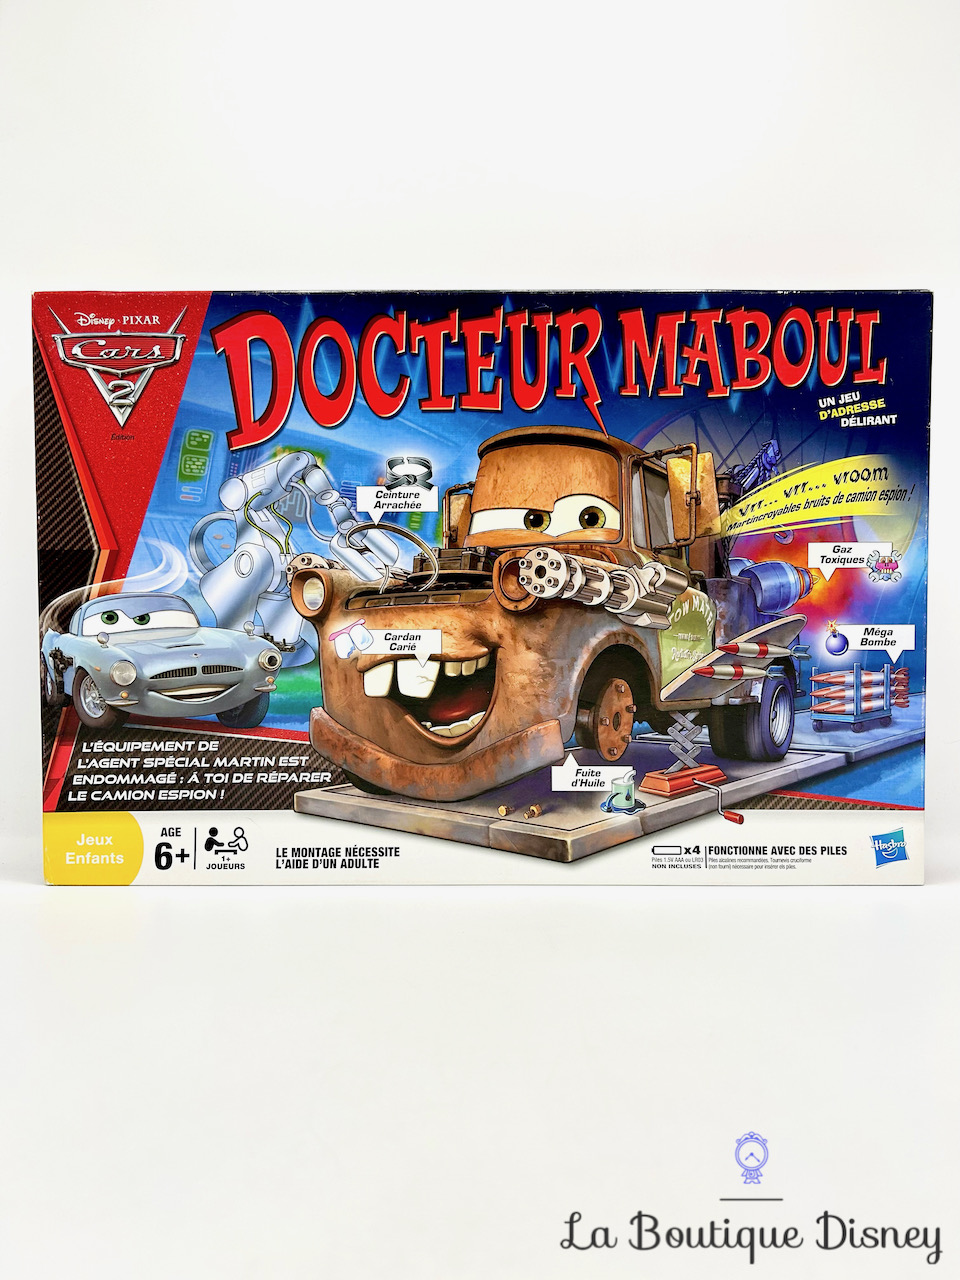 Jeu de société Docteur Maboul Cars 2 Disney Pixar Hasbro Martin dépanneuse